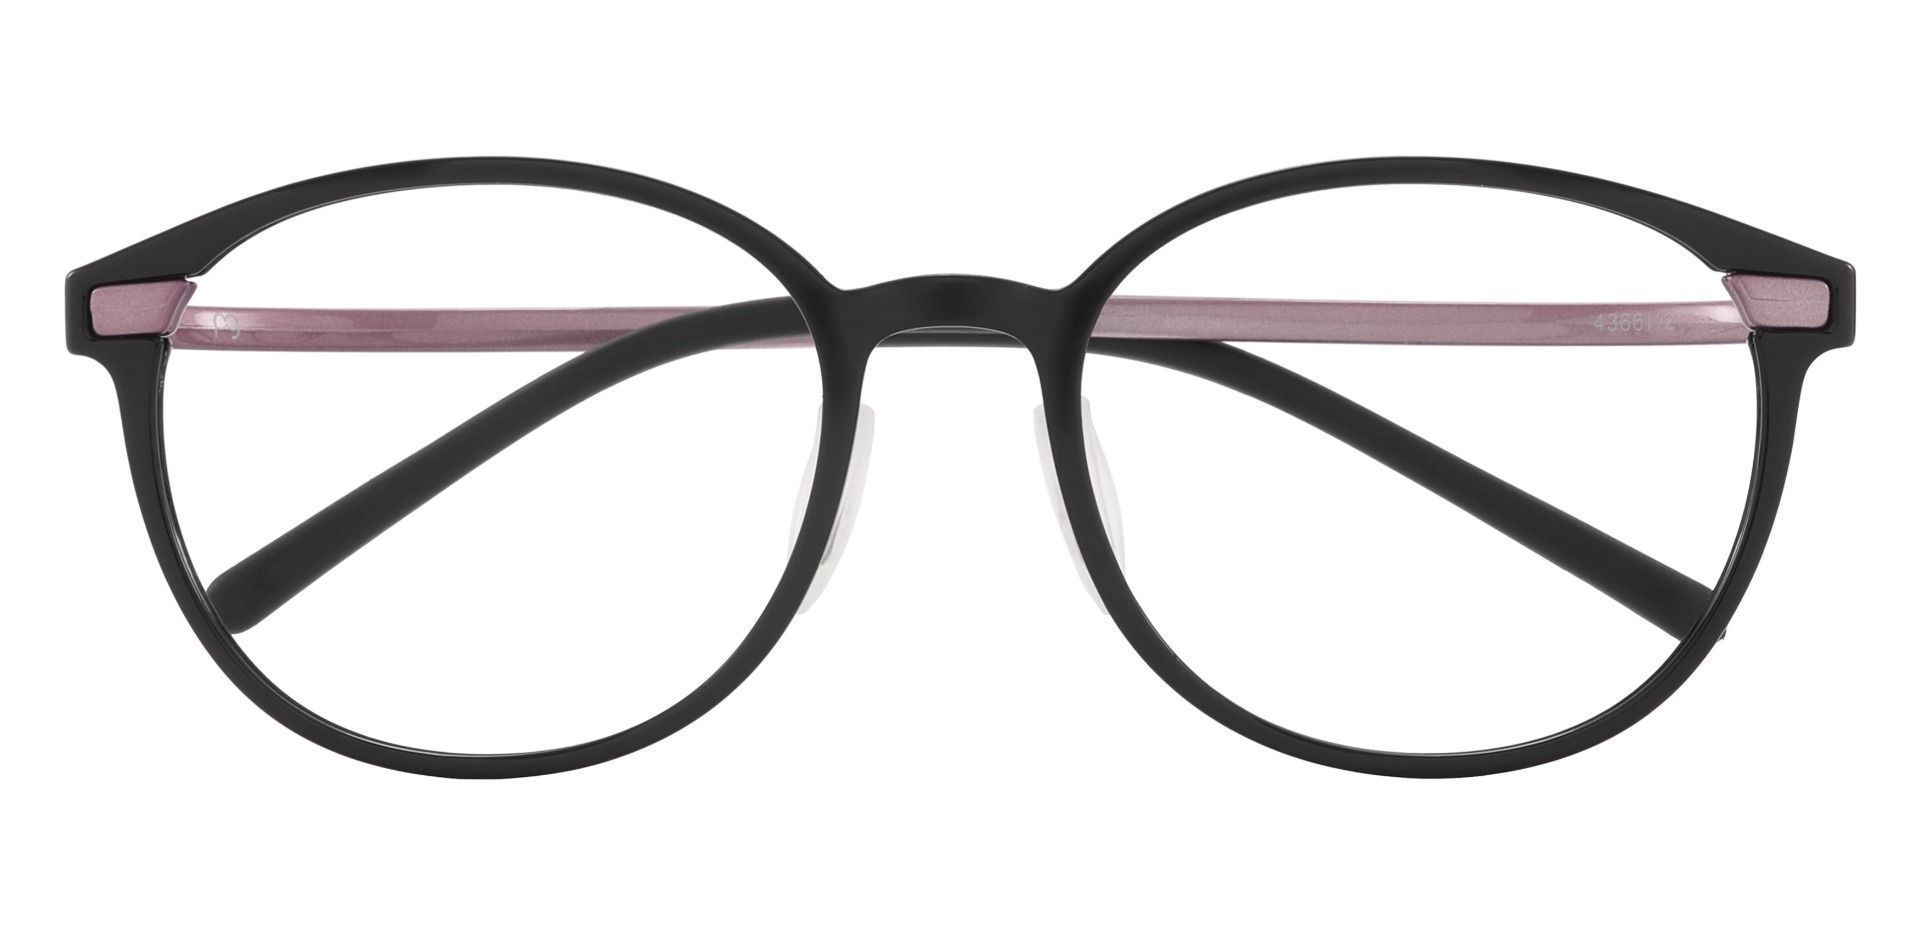 Dawes Oval Prescription Glasses - Pink